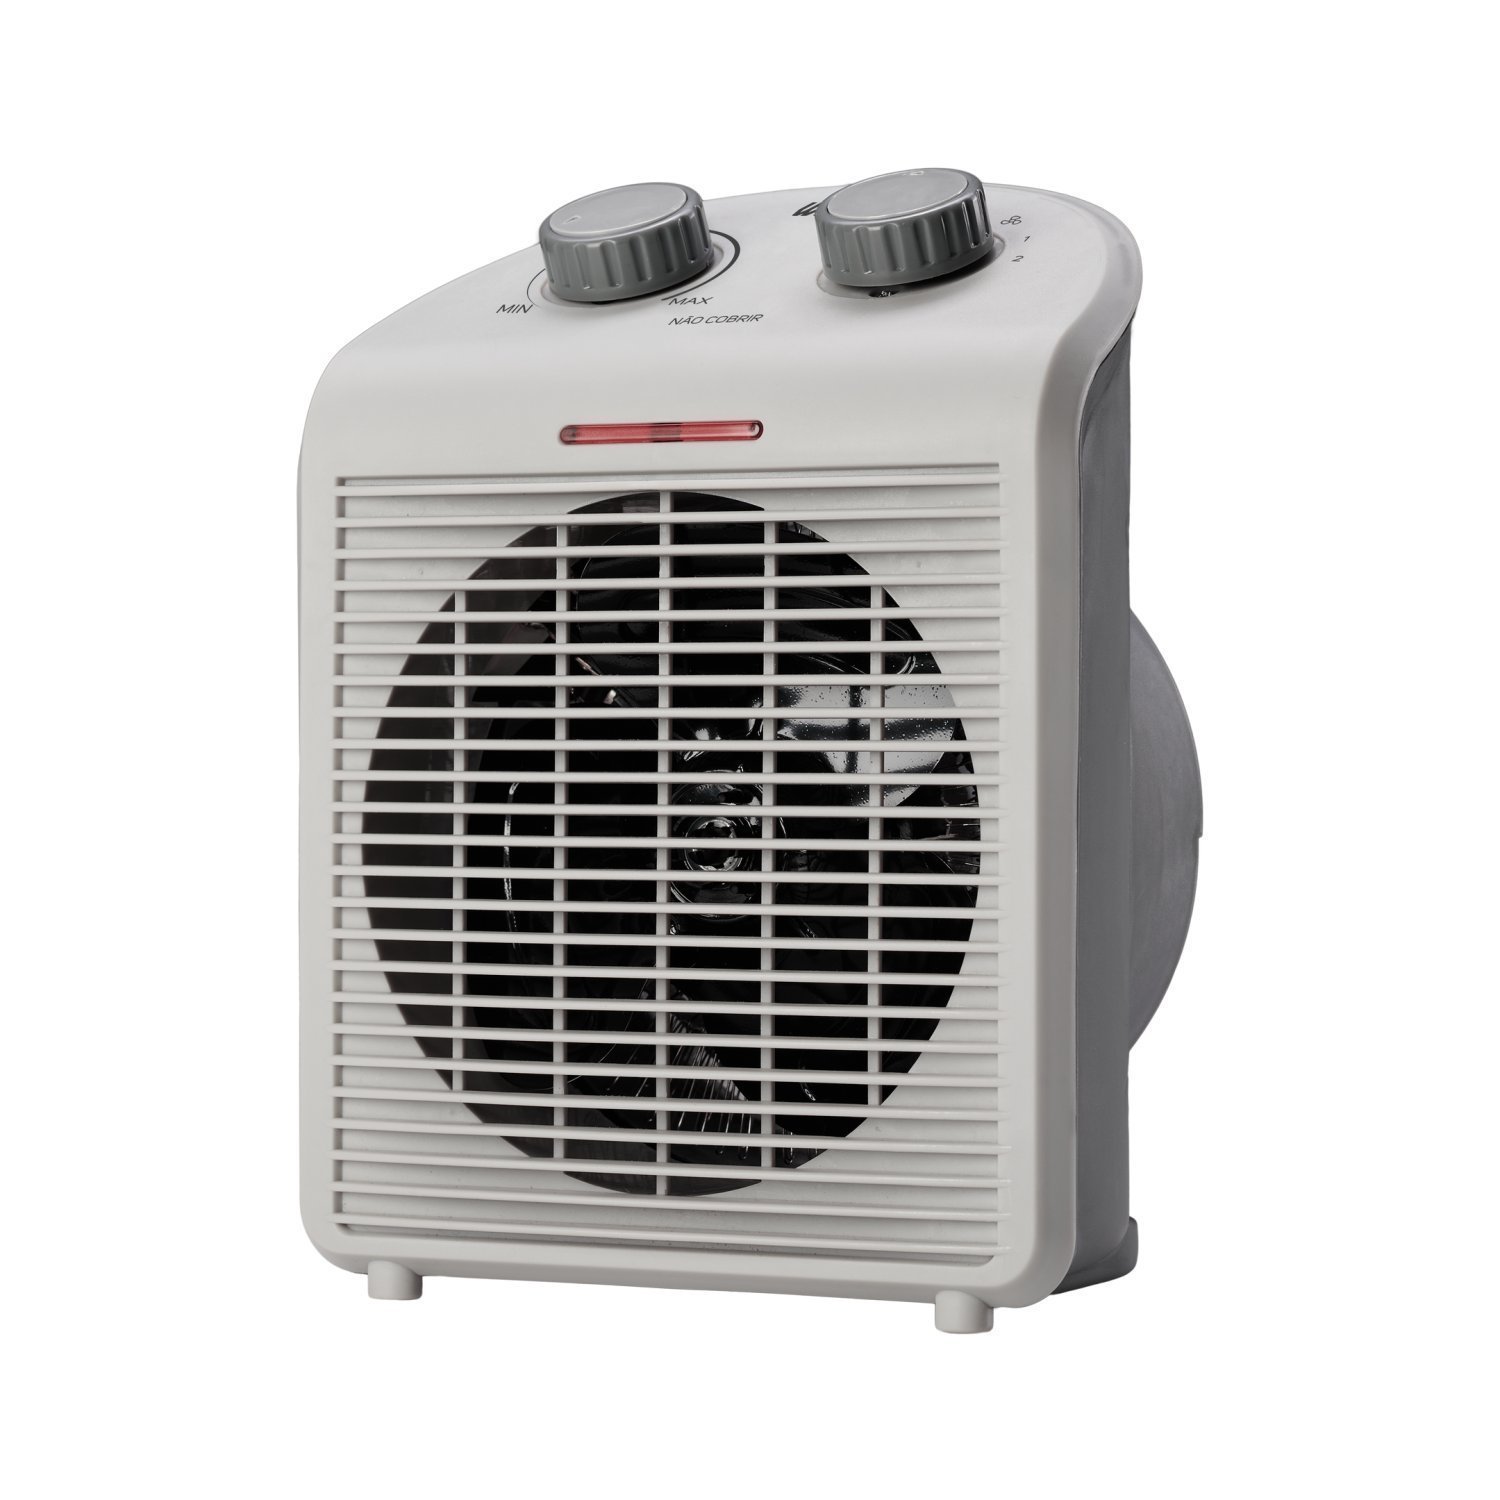 Aquecedor de Ar Portátil Air Heat 3 em 1 1500w 127v WAP Branco